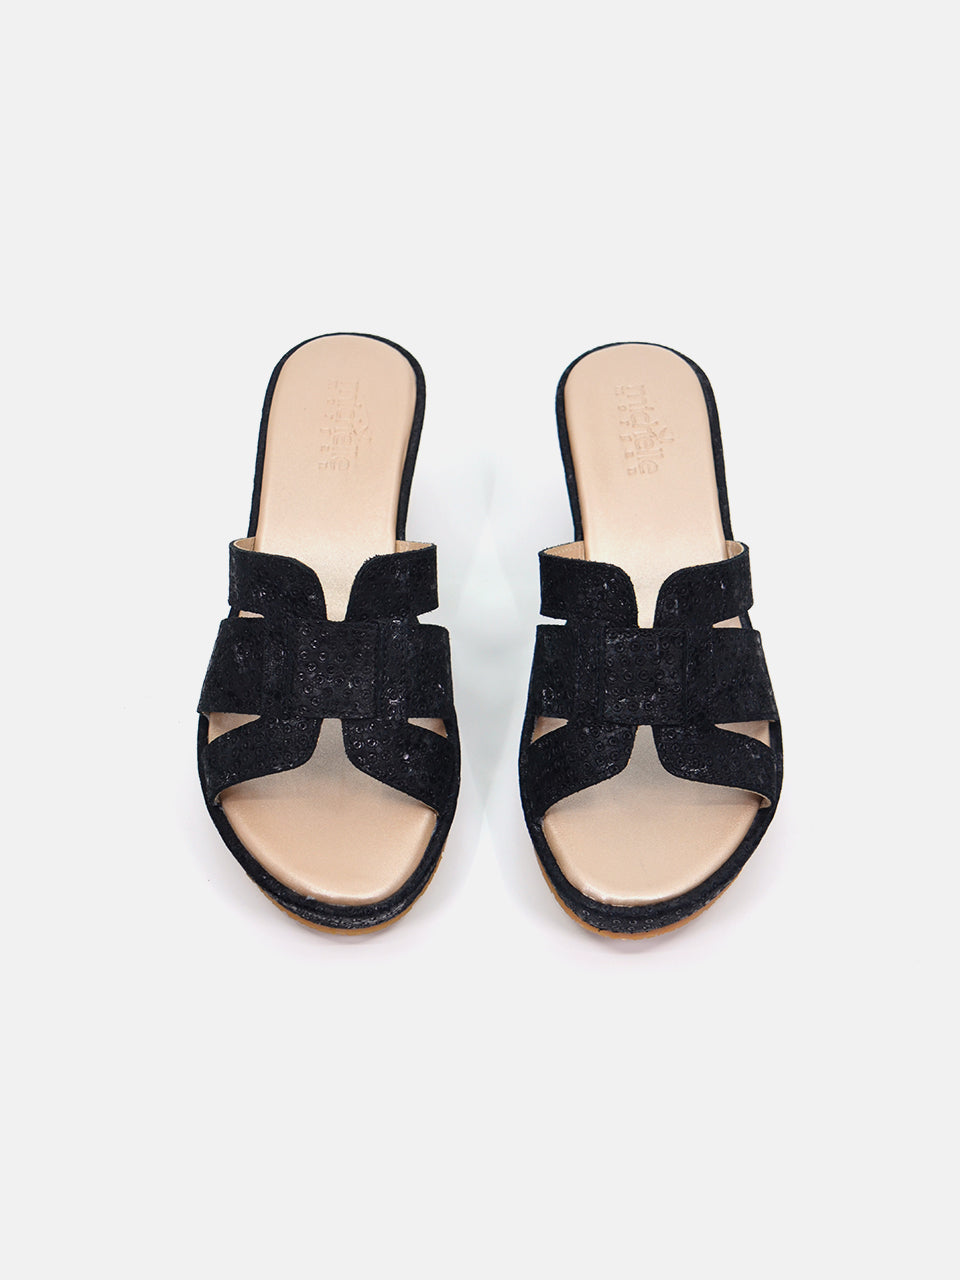 Michelle Morgan MM-301 Women's Wedge Sandals #color_Black